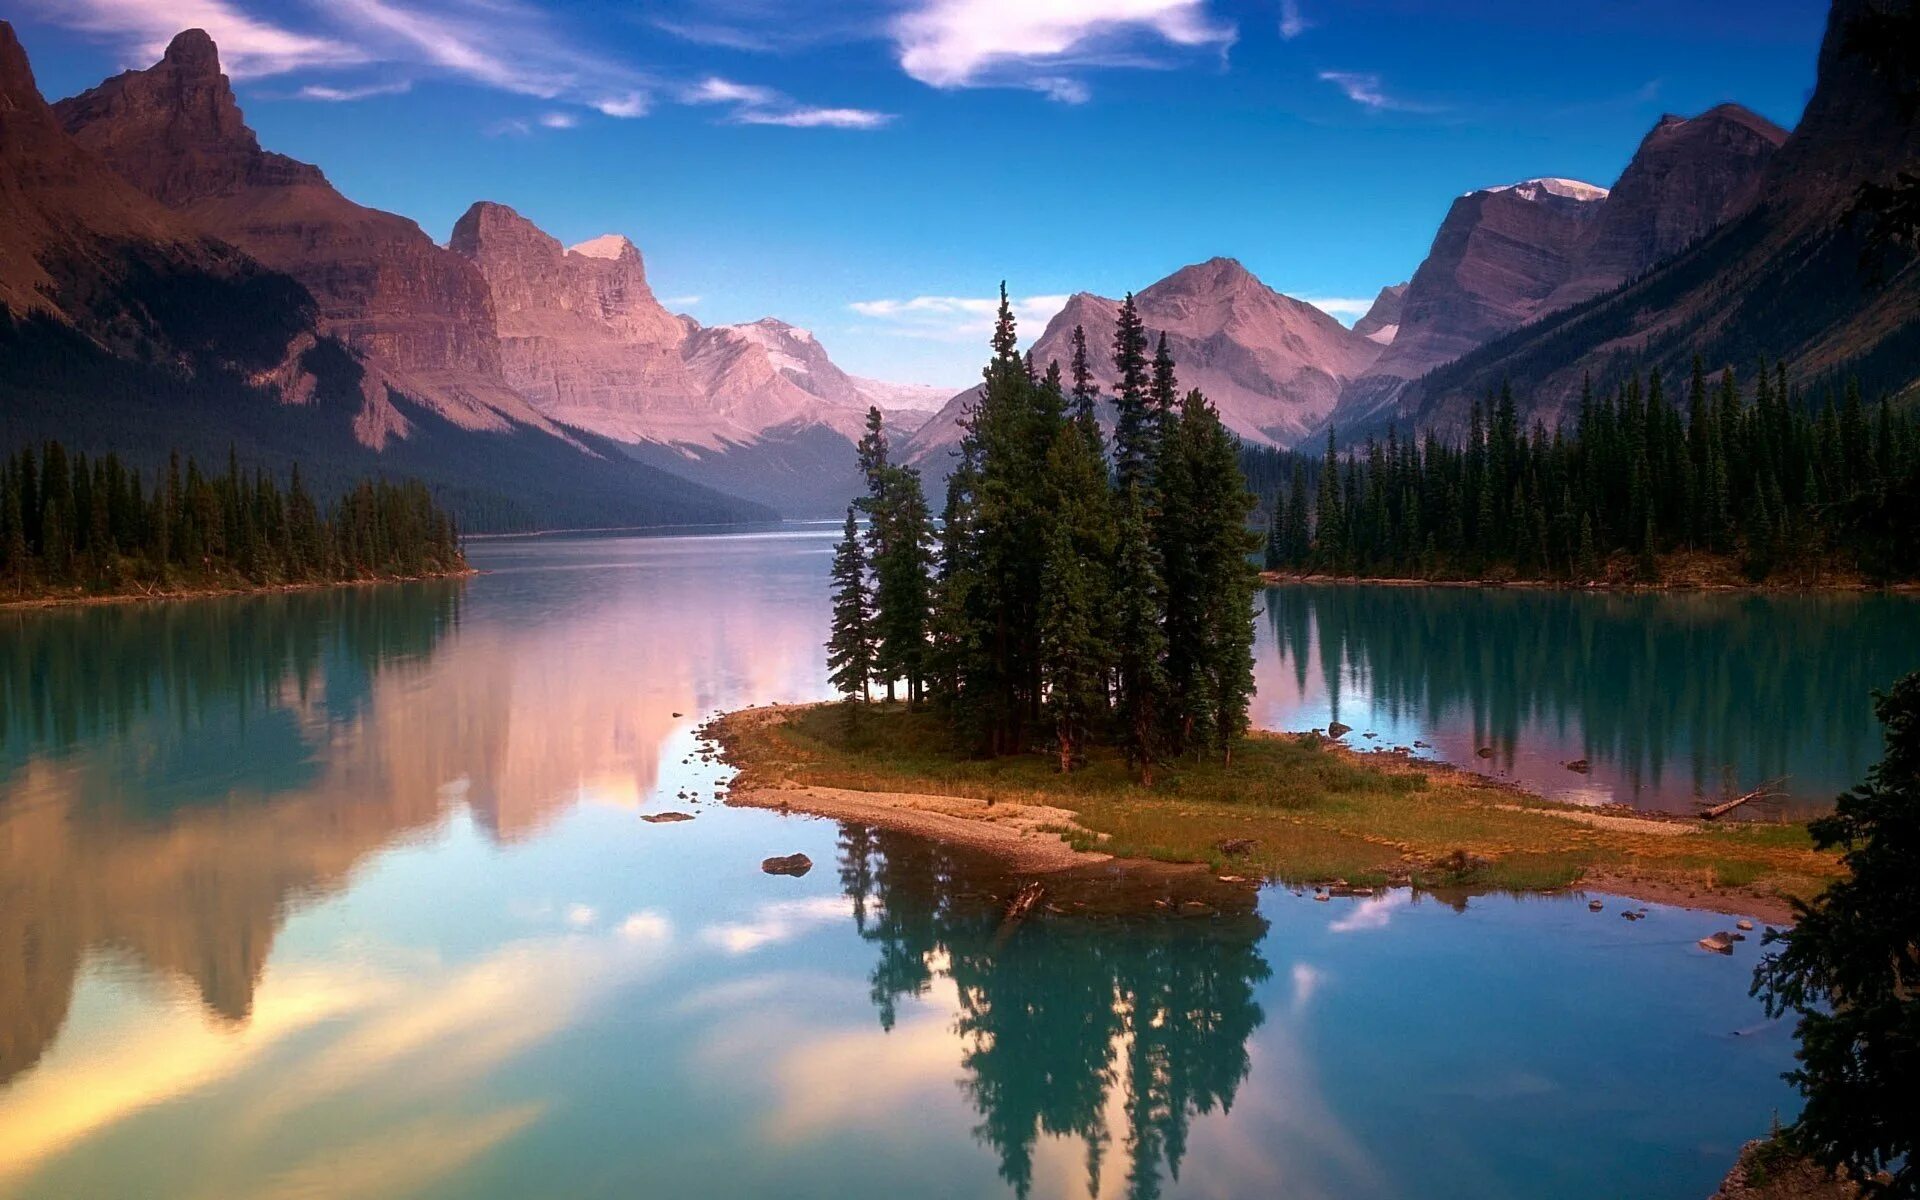 Картинка на большой экран. Национальный парк Джаспер, Альберта, Канада. Озеро Макдональд штат Монтана 4k. Озеро Малайн в национальном парке Джаспер Альберта Канада. Пейзаж.